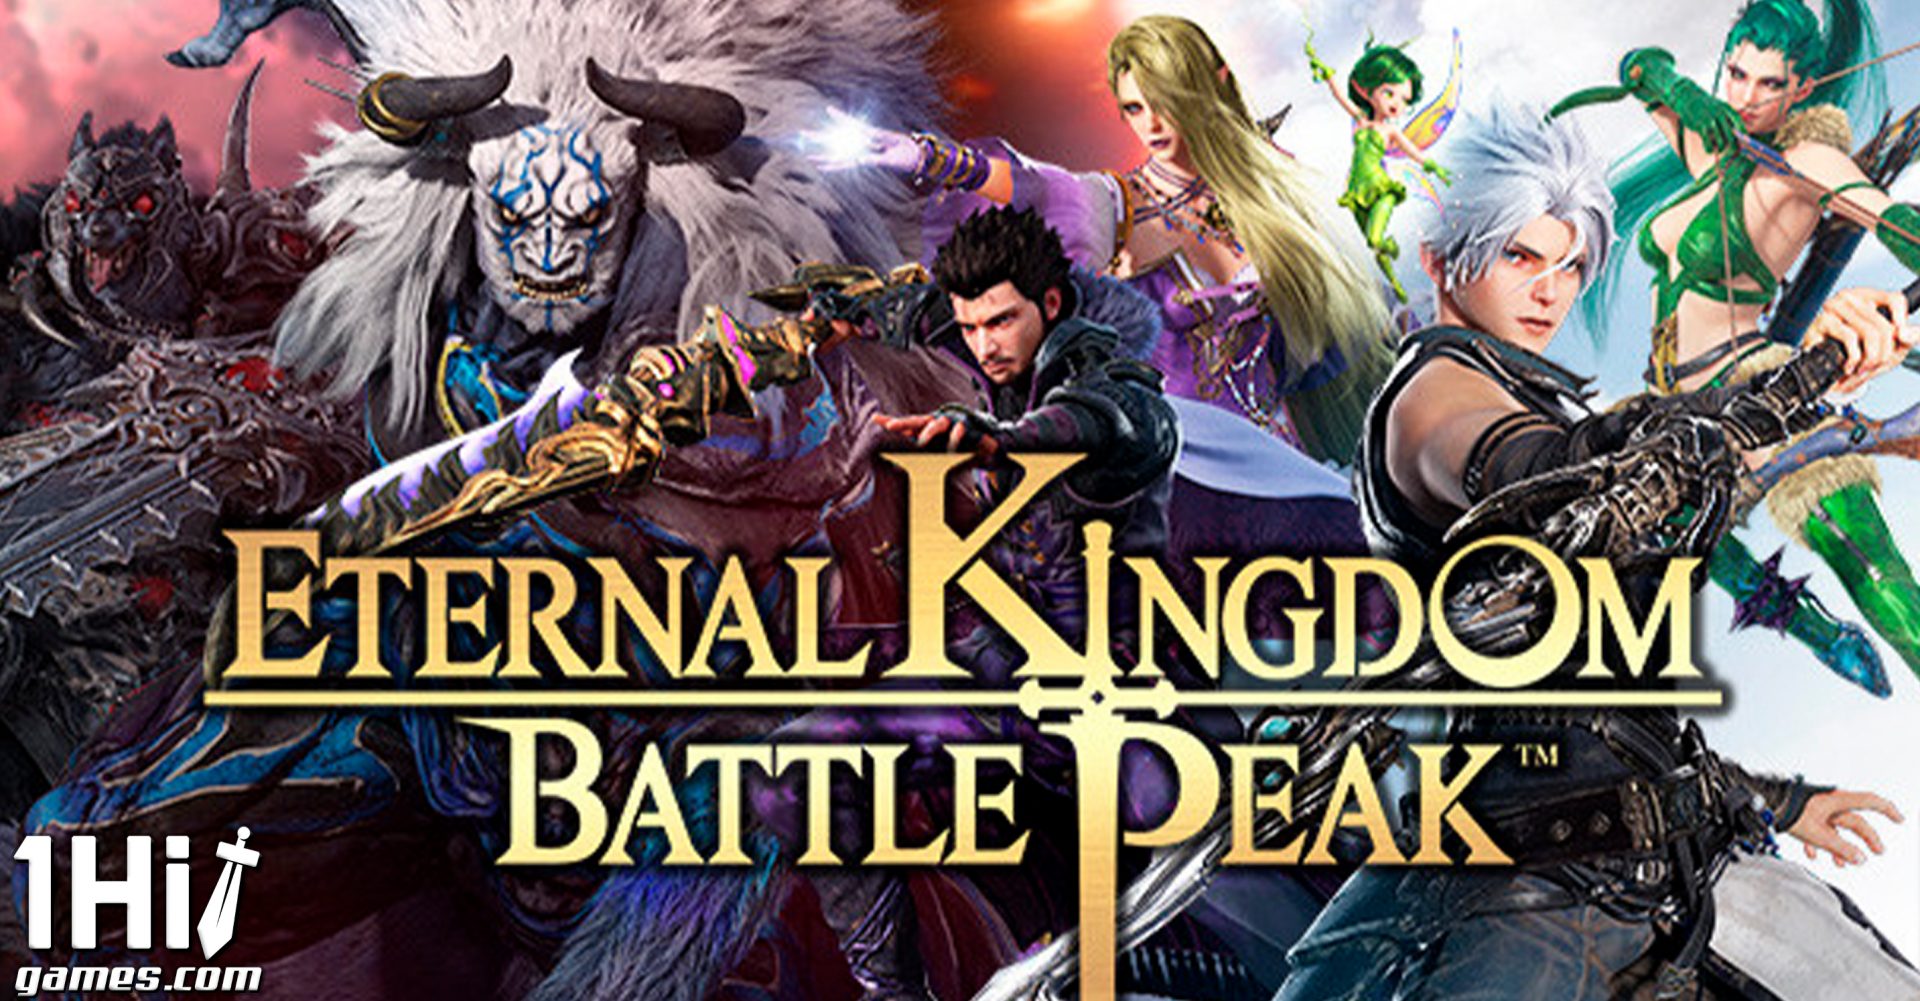 Eternal Kingdom Battle Peak para PS4 e PS5 agora disponível em todo o mundo